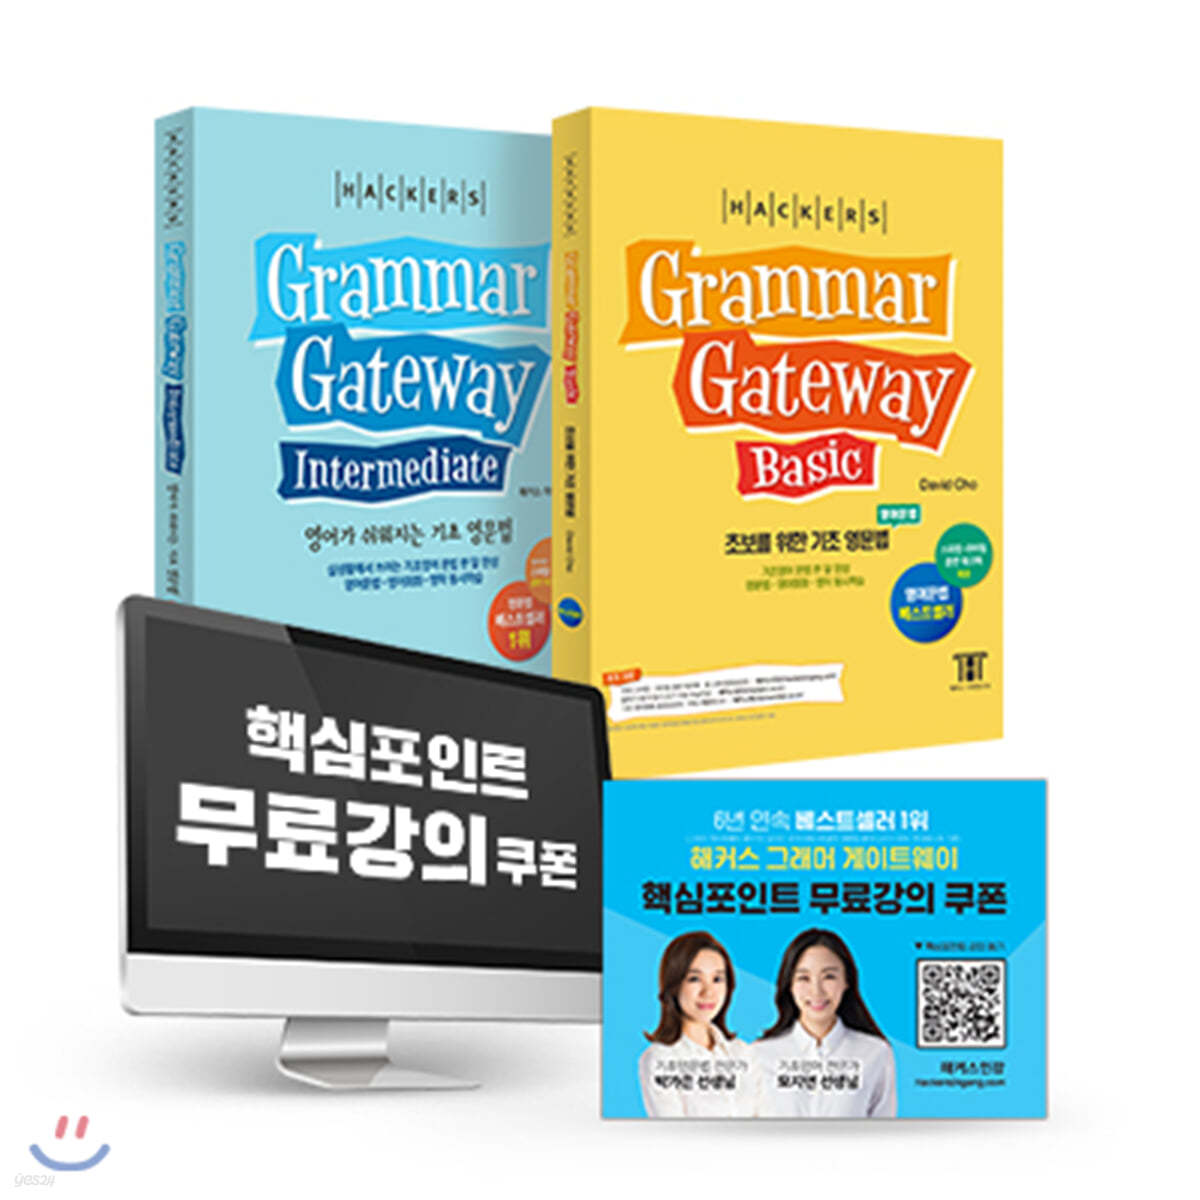 해커스 Grammar gateway 그래머 게이트웨이 한국어판 패키지